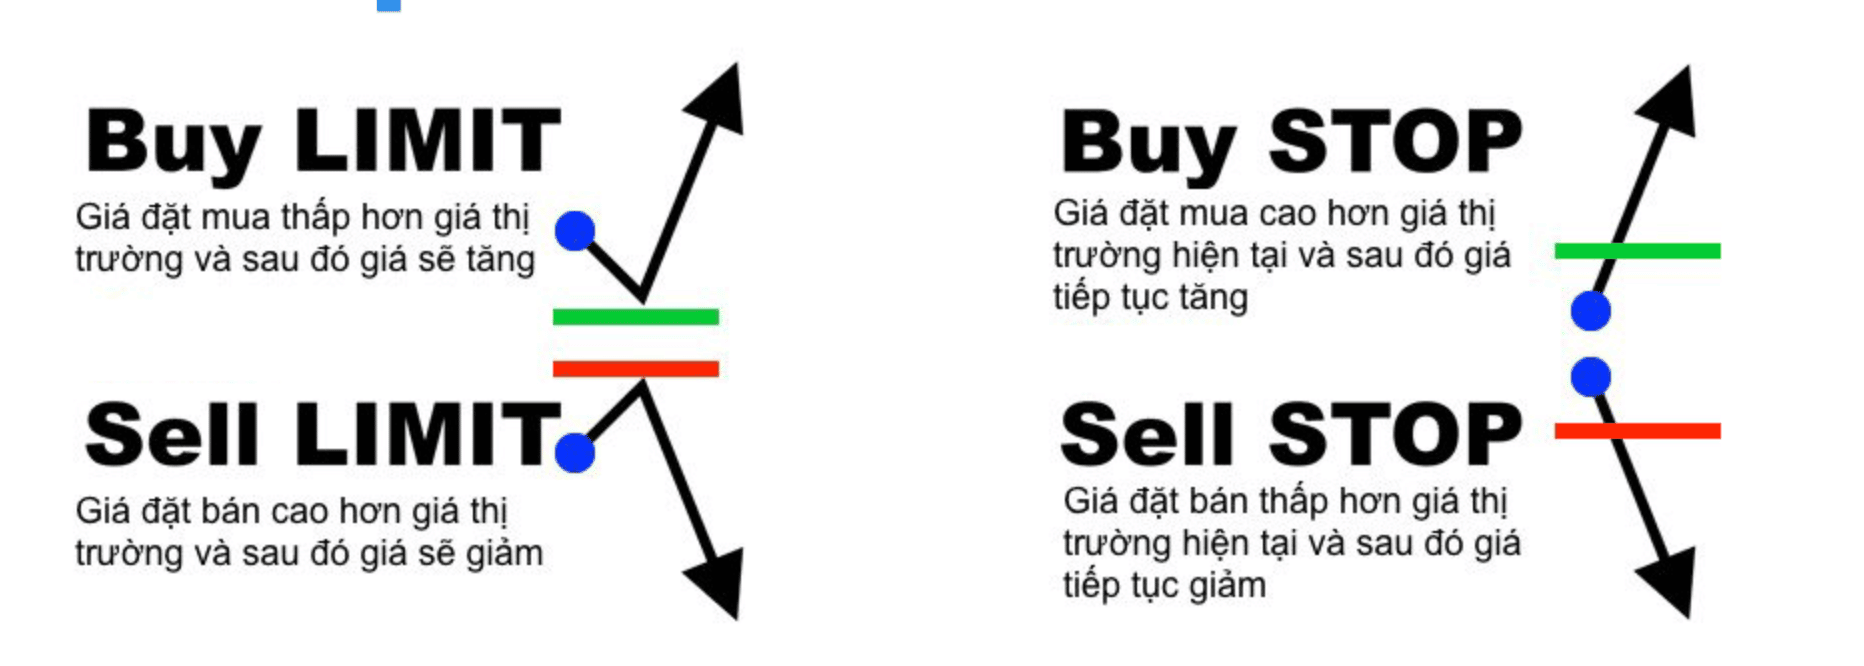 Cách phân biệt giữa Buy - Sell Limit hiện nay